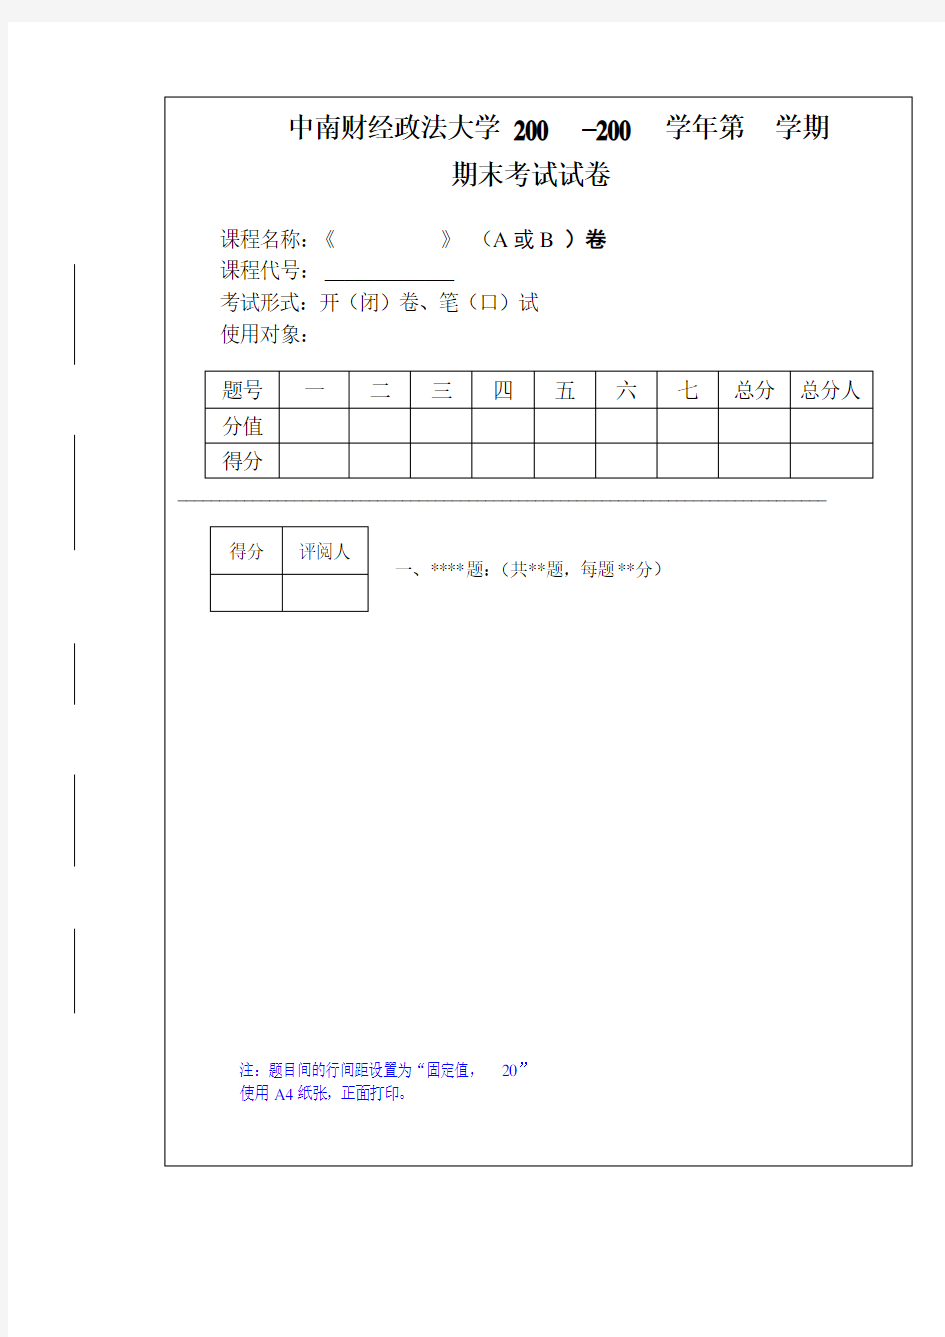 中南财经政法大学期末考试试卷样本(模板)